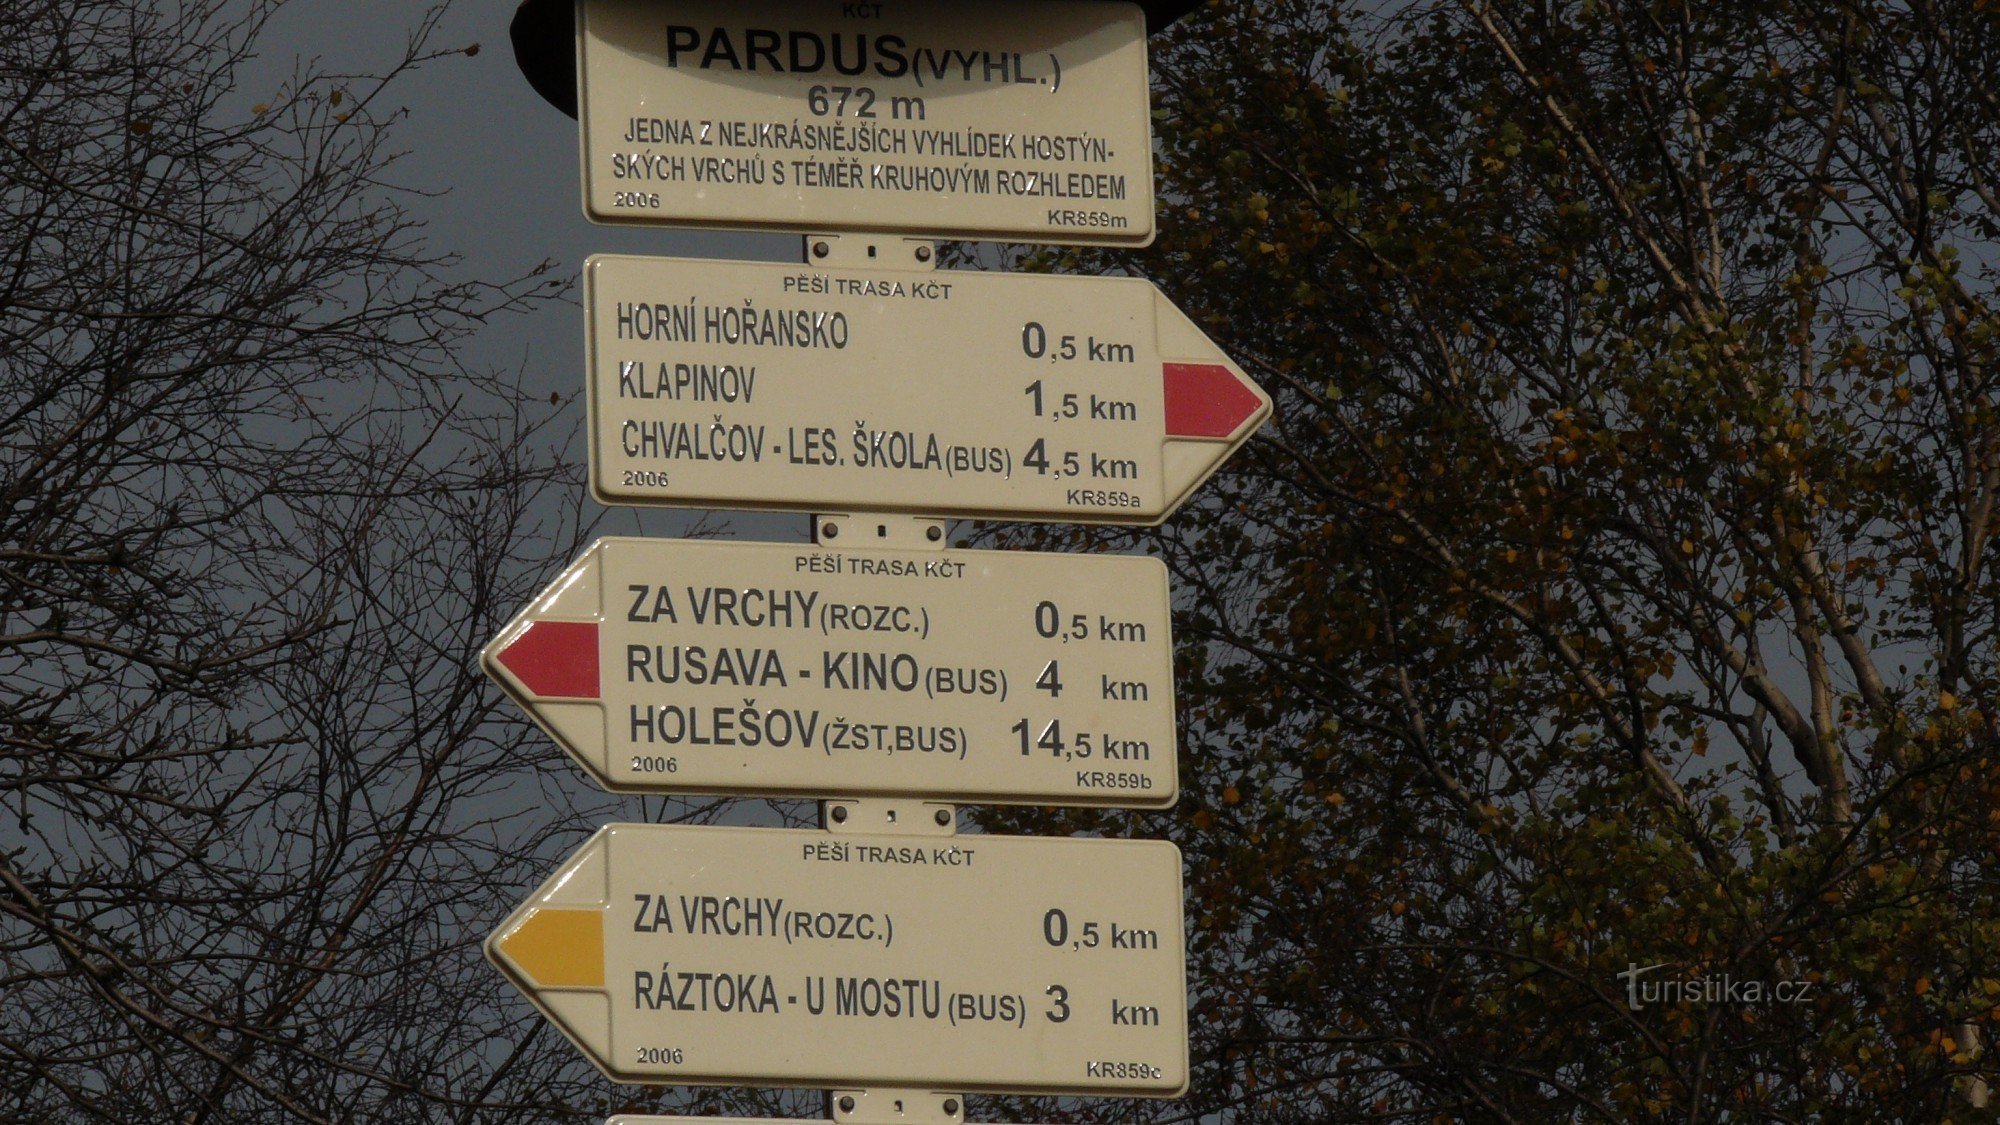 Placa de sinalização em Pardus